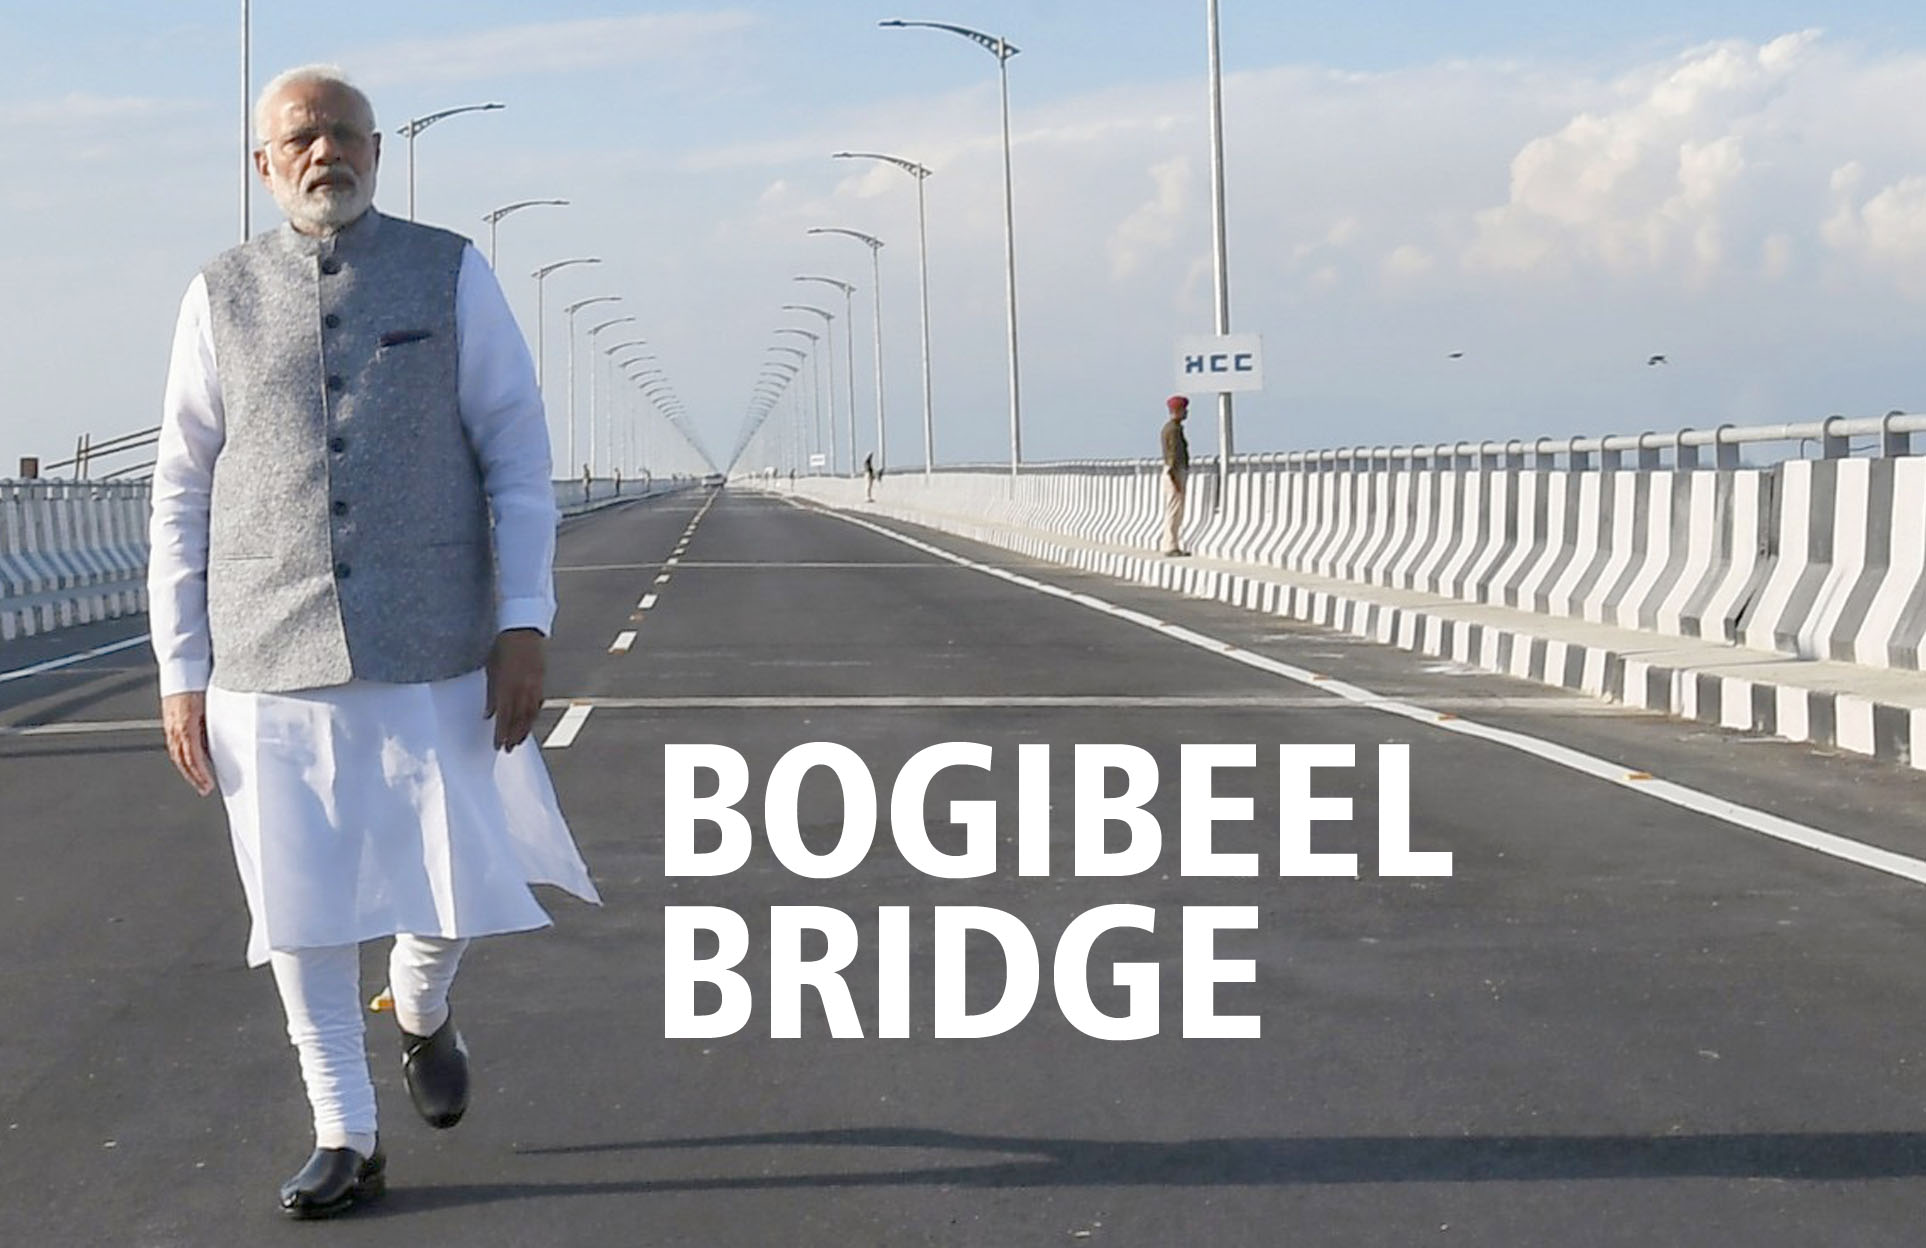 भारत के सबसे बड़े रेल रोड ब्रिज का शुभारंभ, बोगीबील सेतु राष्‍ट्र को समर्पित